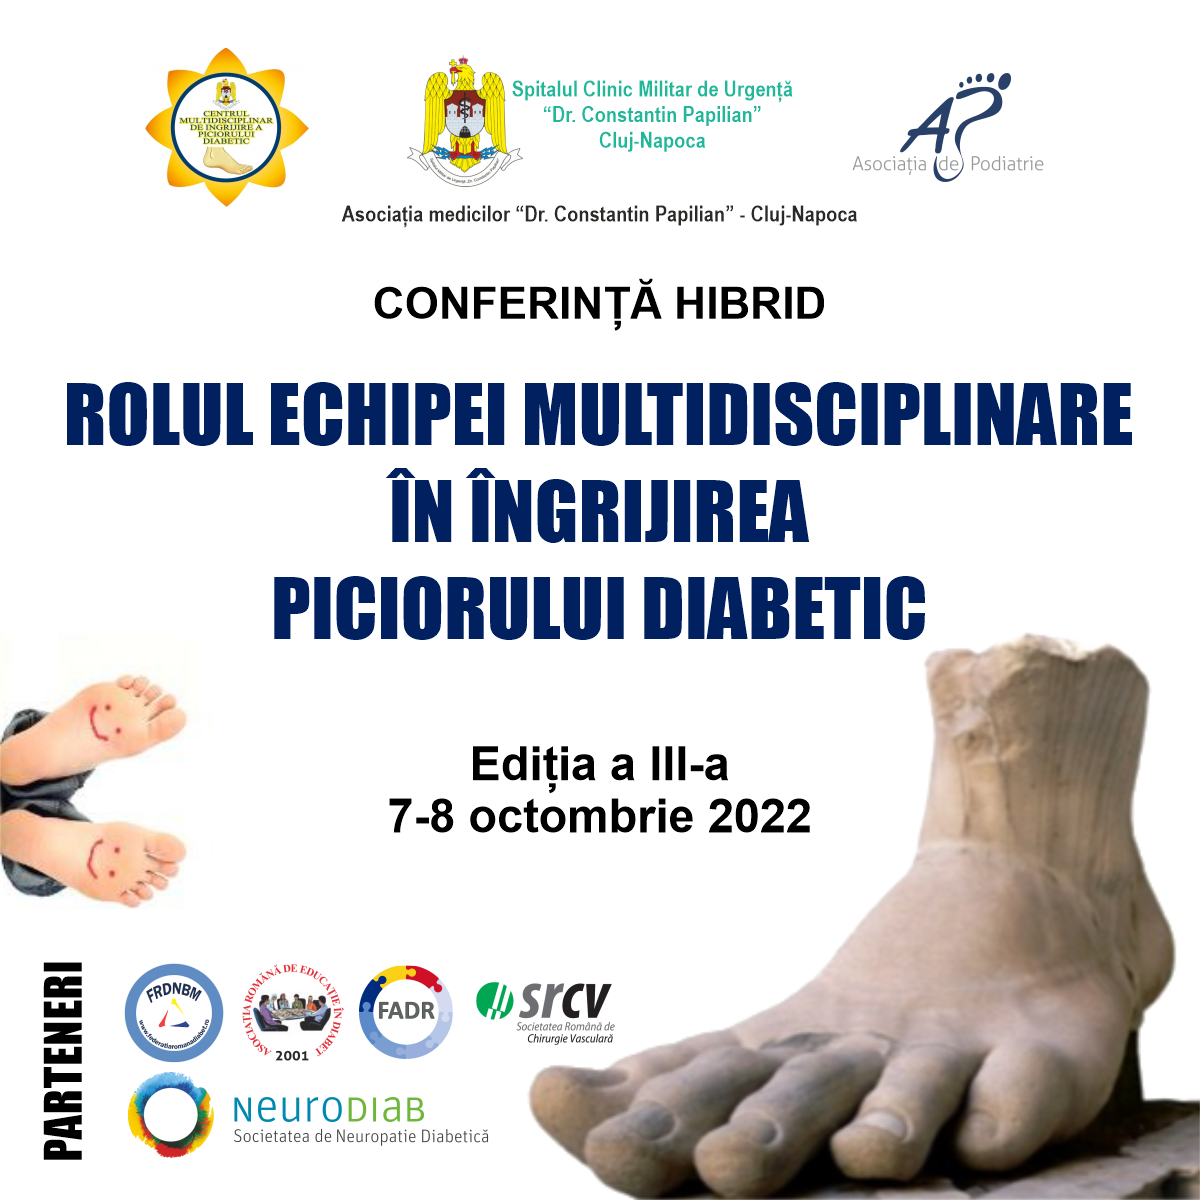 Rolul echipei multidisciplinare în îngrijirea piciorului diabetic, ediția a III-a